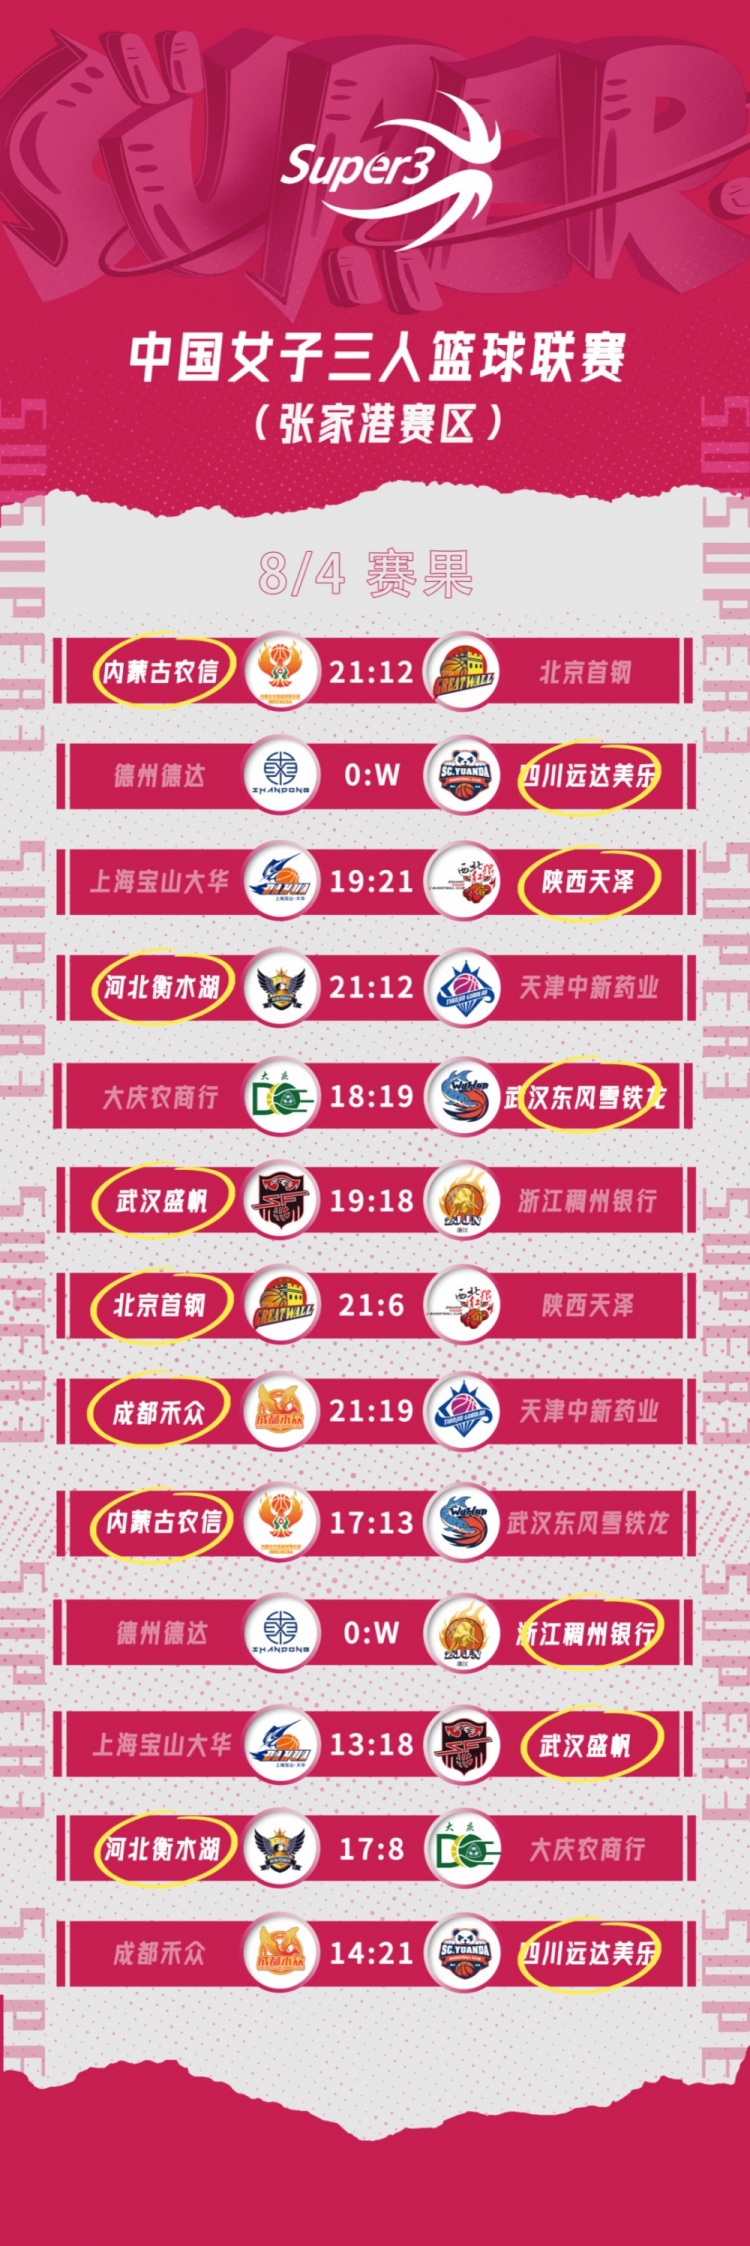 与众不同，2022赛季中国三人篮球联赛正式起航！